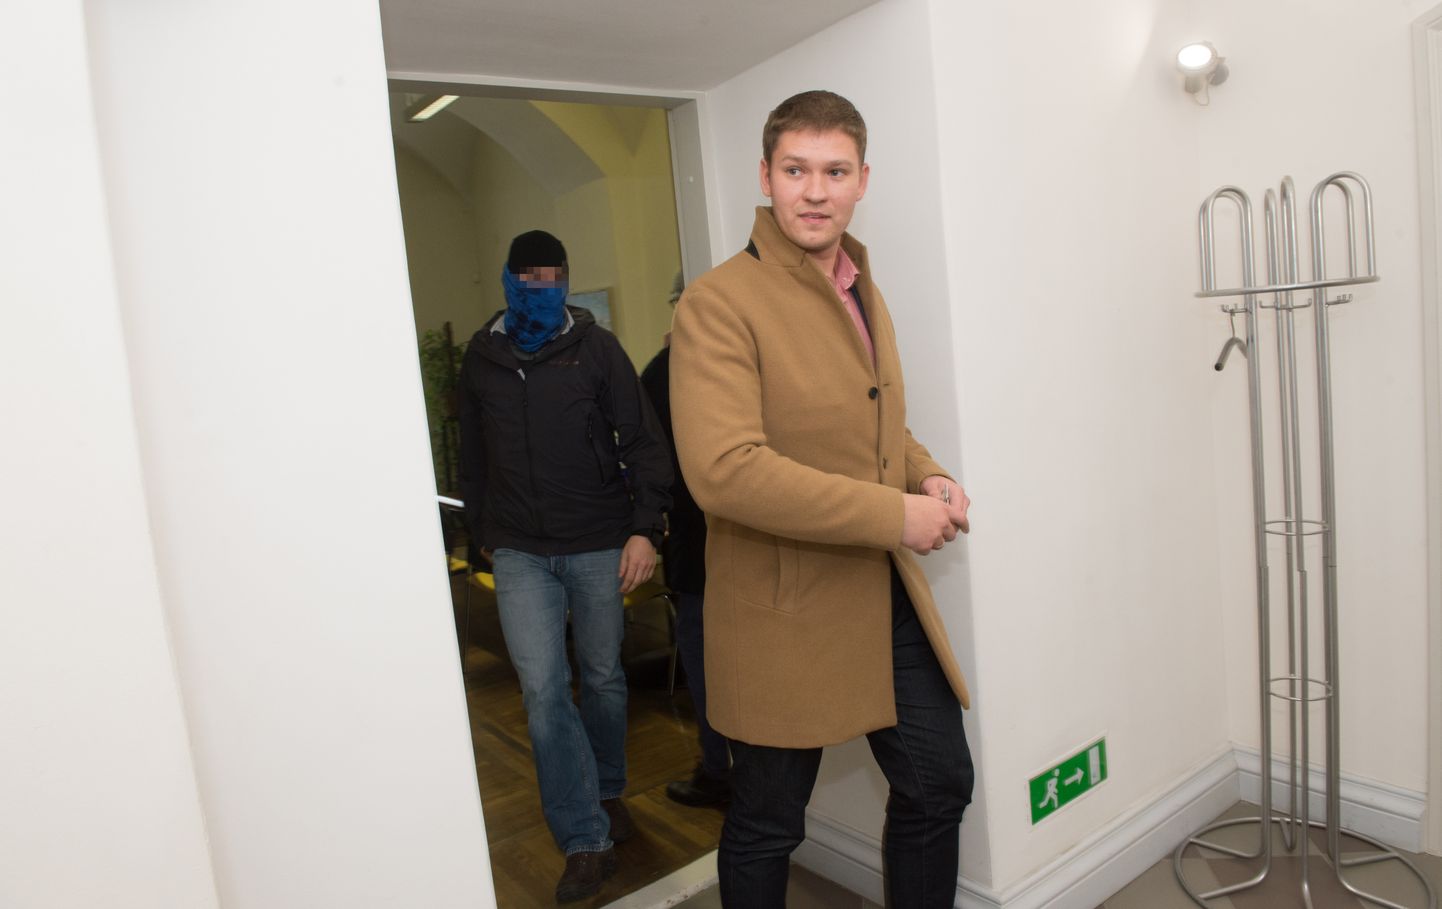 Mullu 18. oktoobril otsisid kaitsepolitseinikud Artjom Suvorovi linnavalitsuse kabineti läbi ning eskortisid tollase abilinnapea majast välja.